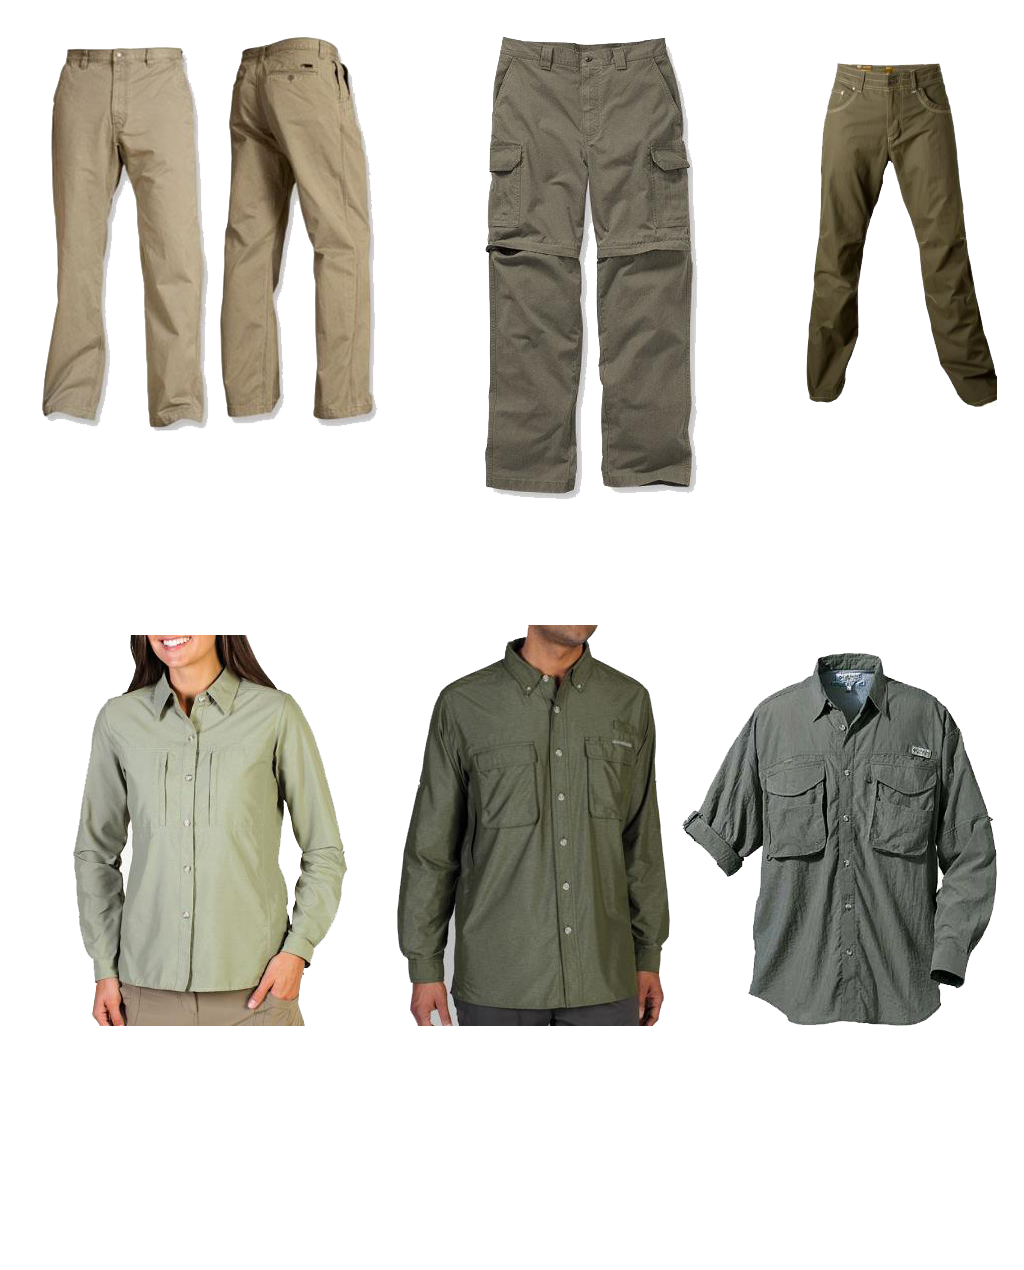 clothing to take on safari